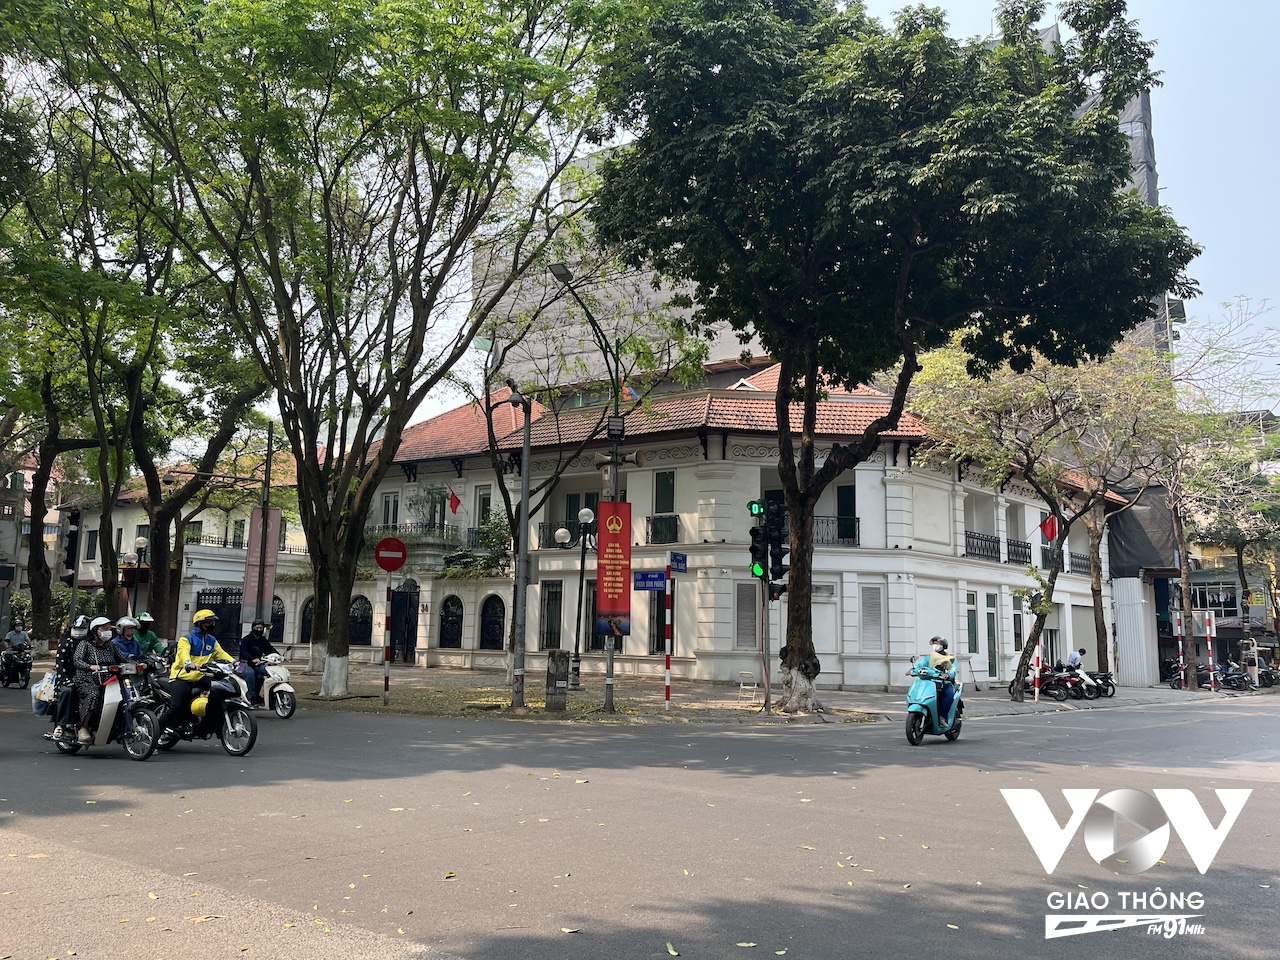 Phố Phan Đình Phùng, một trong những tuyến phố đẹp nhất thủ đô, không chỉ bởi luôn rợp bóng mát cây xanh mà con phố này còn 'sở hữu' rất nhiều biệt thự cổ còn khá nguyên vẹn. Những ngôi biệt thự được trùng tu lại cũng đều giữ được gần như nguyên gốc, tạo cho con phố này sức hút rất lớn với du khách